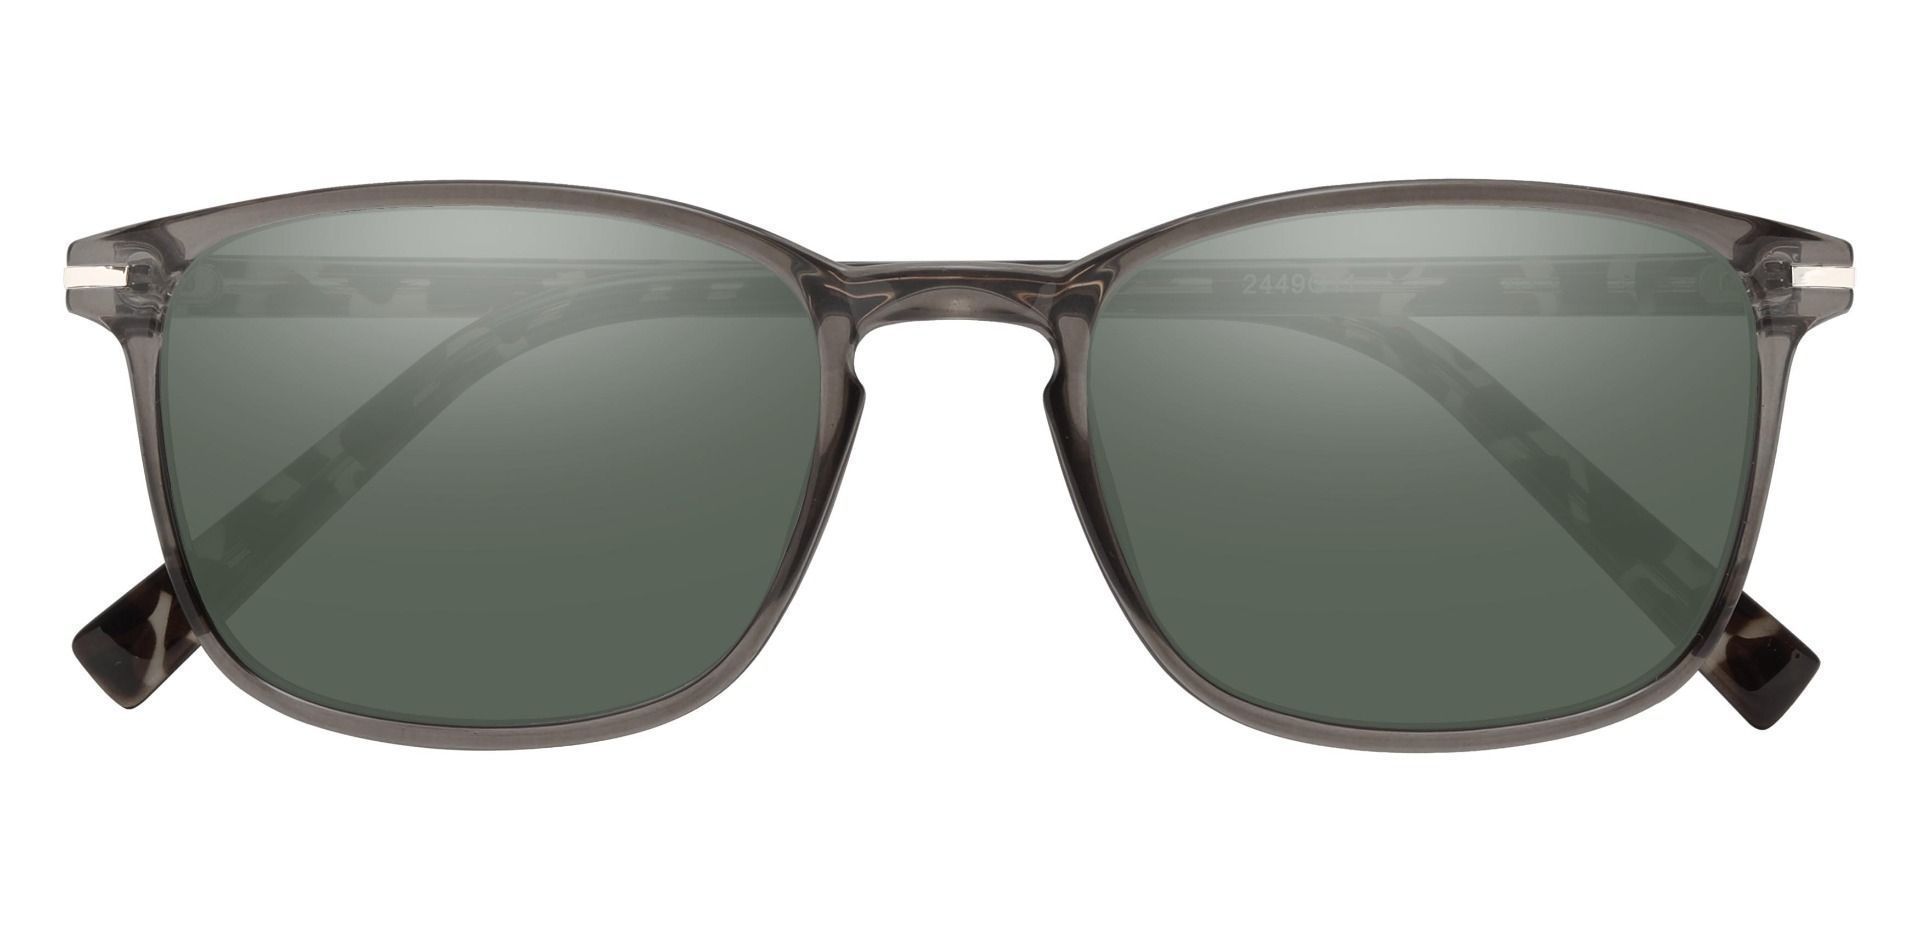 Dumont Rectangle Prescription Sunglasses - Gray Frame With Green Lenses